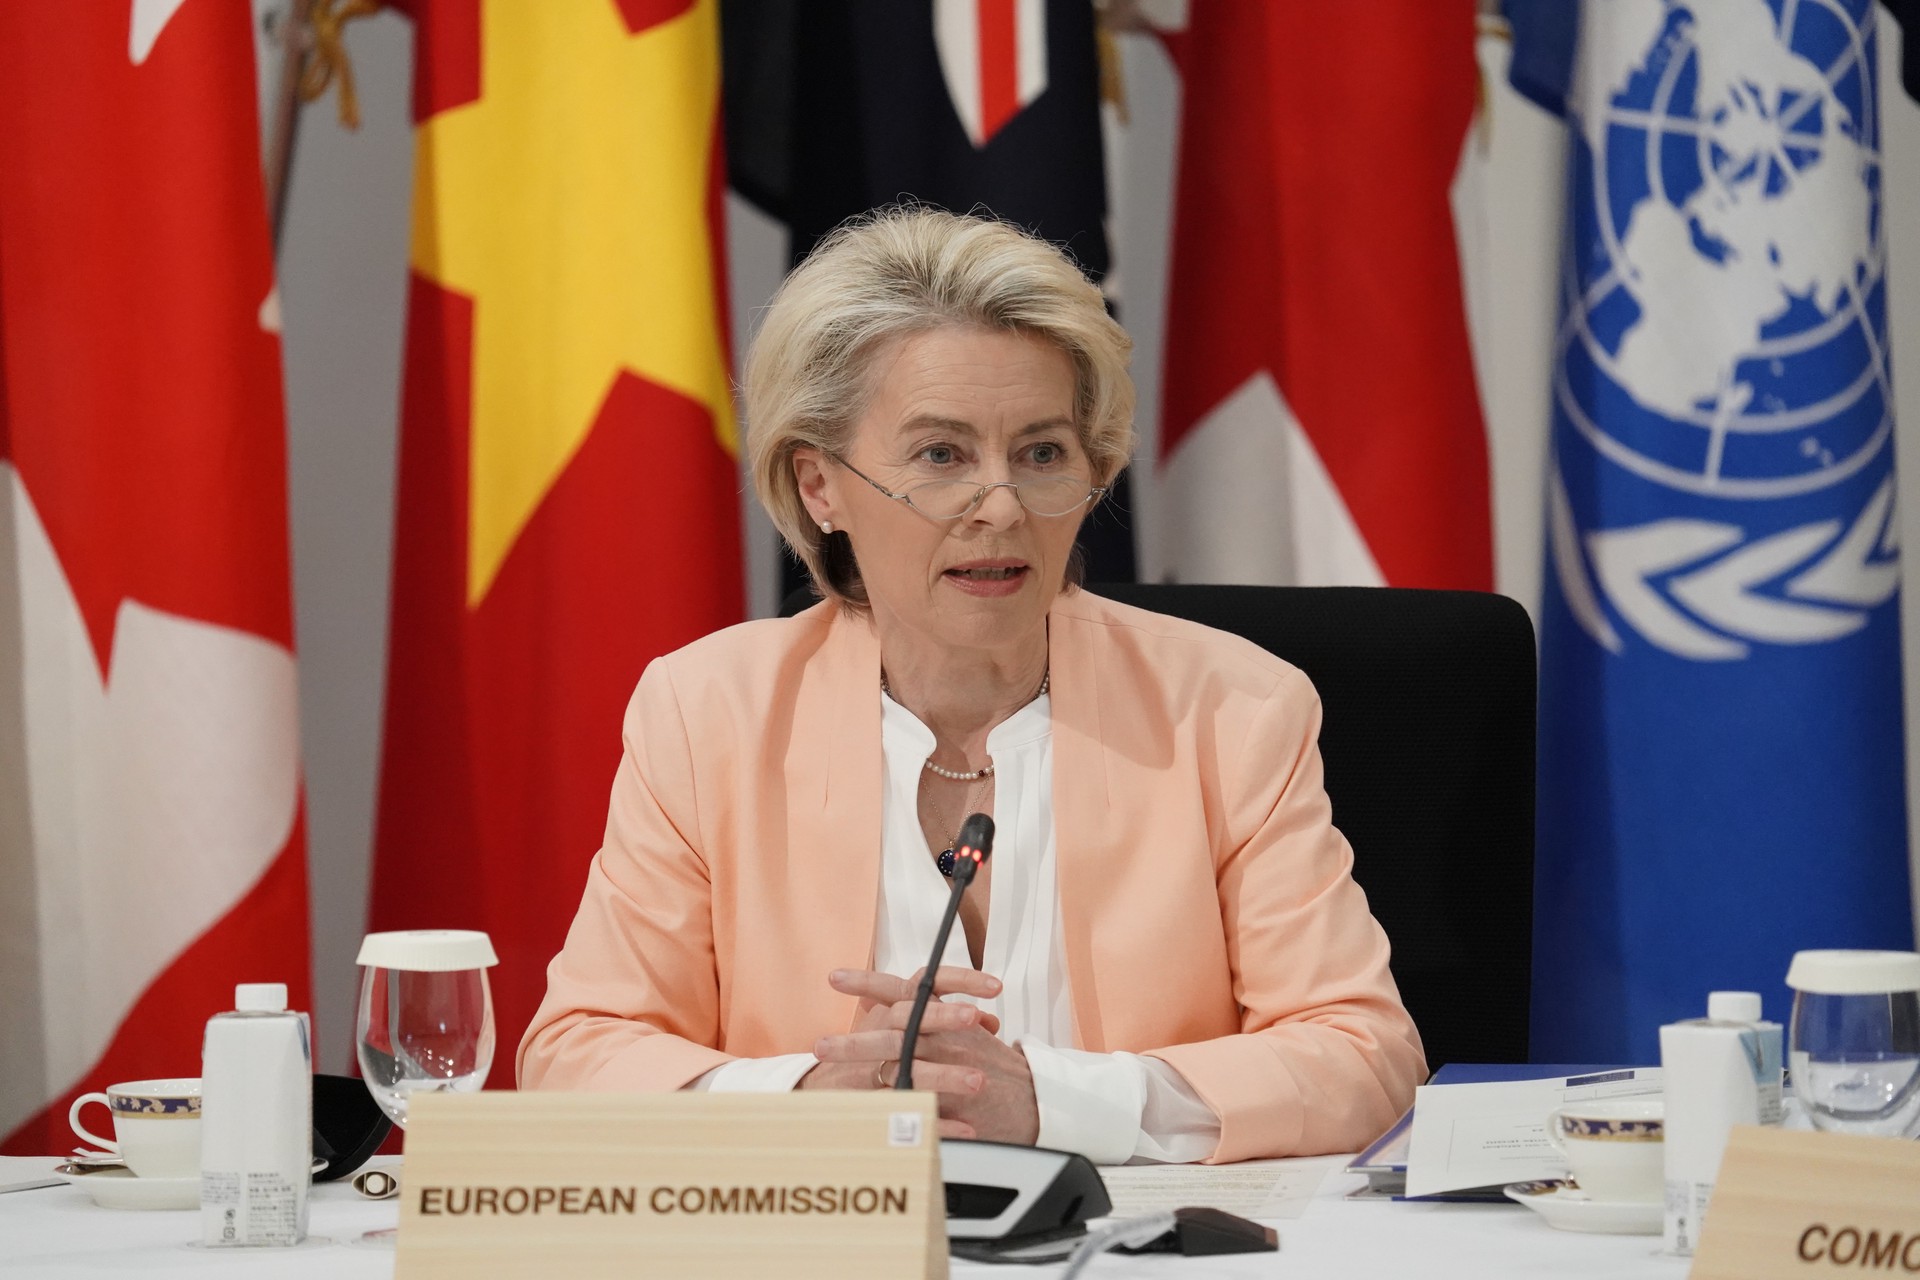 СМИ: Урсула фон дер Ляйен привела в ярость сотрудников ЕС